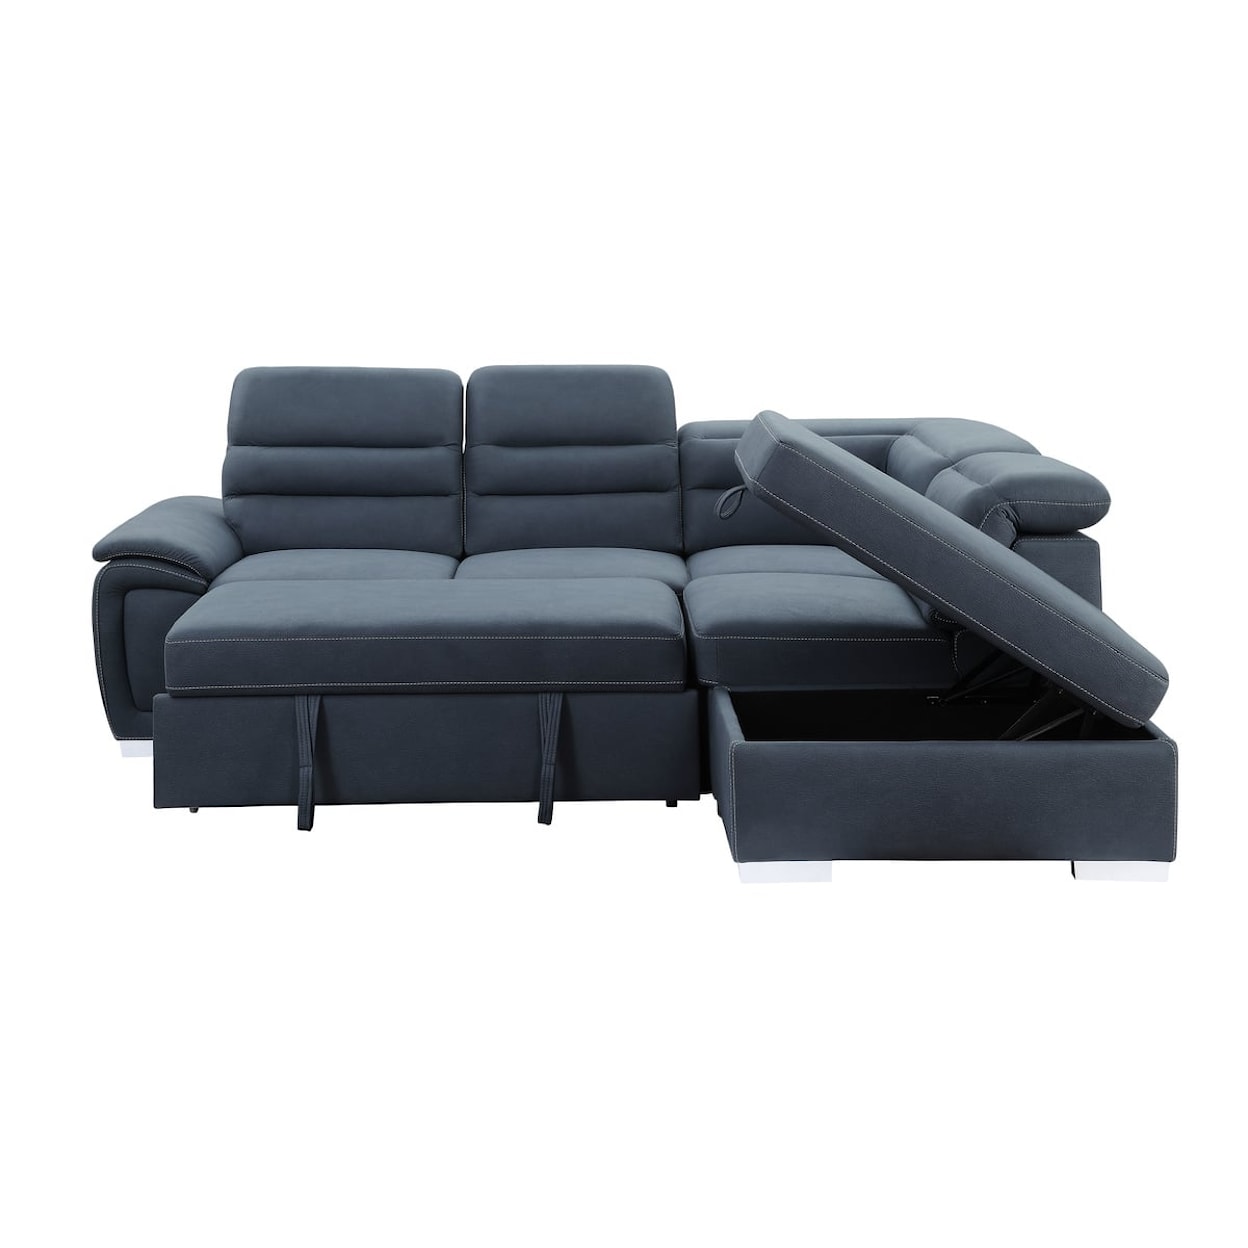 Homelegance Platina 3-Piece Sectional Sofa